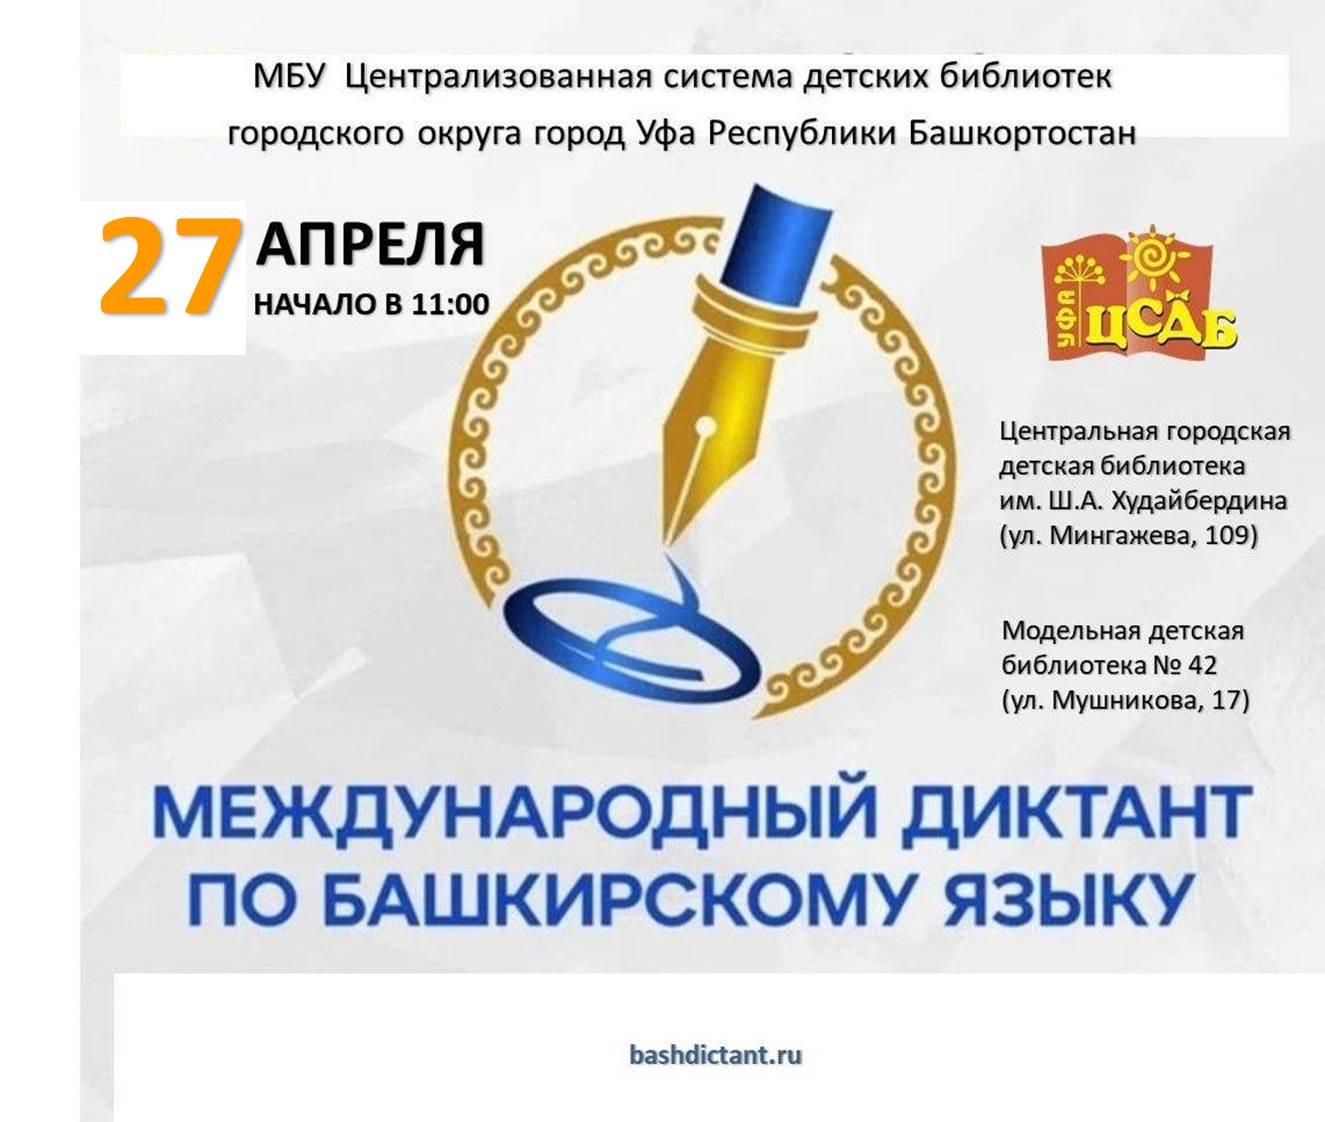 С 27 по 29 апреля состоится Международный диктант по башкирскому языку 